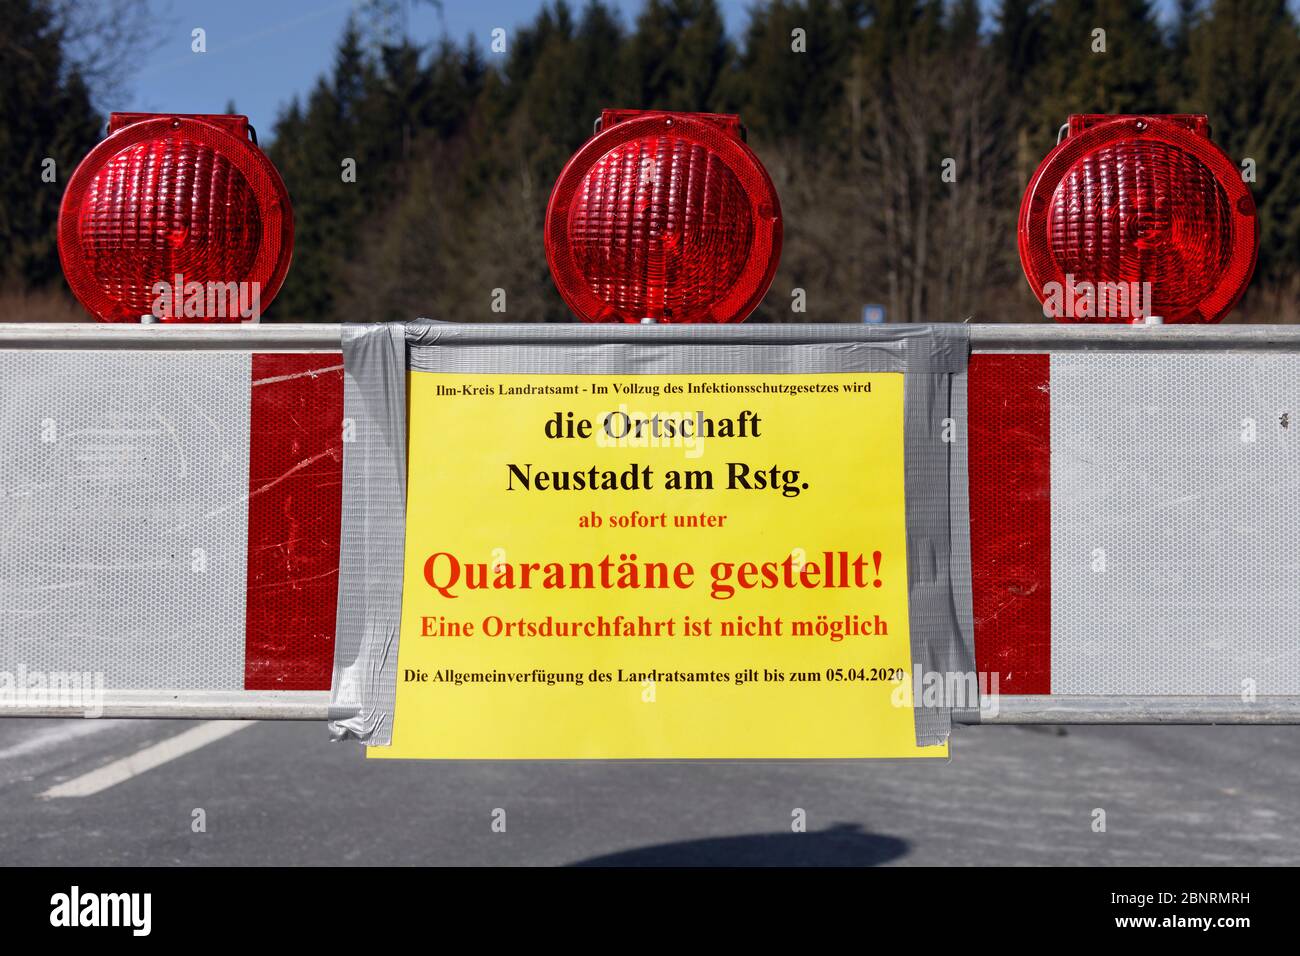 Germany, Thuringia, Ilmkreis, Großbreitenbach, Neustadt / Rnstg, Hohe Tanne, sign, roadblock Stock Photo